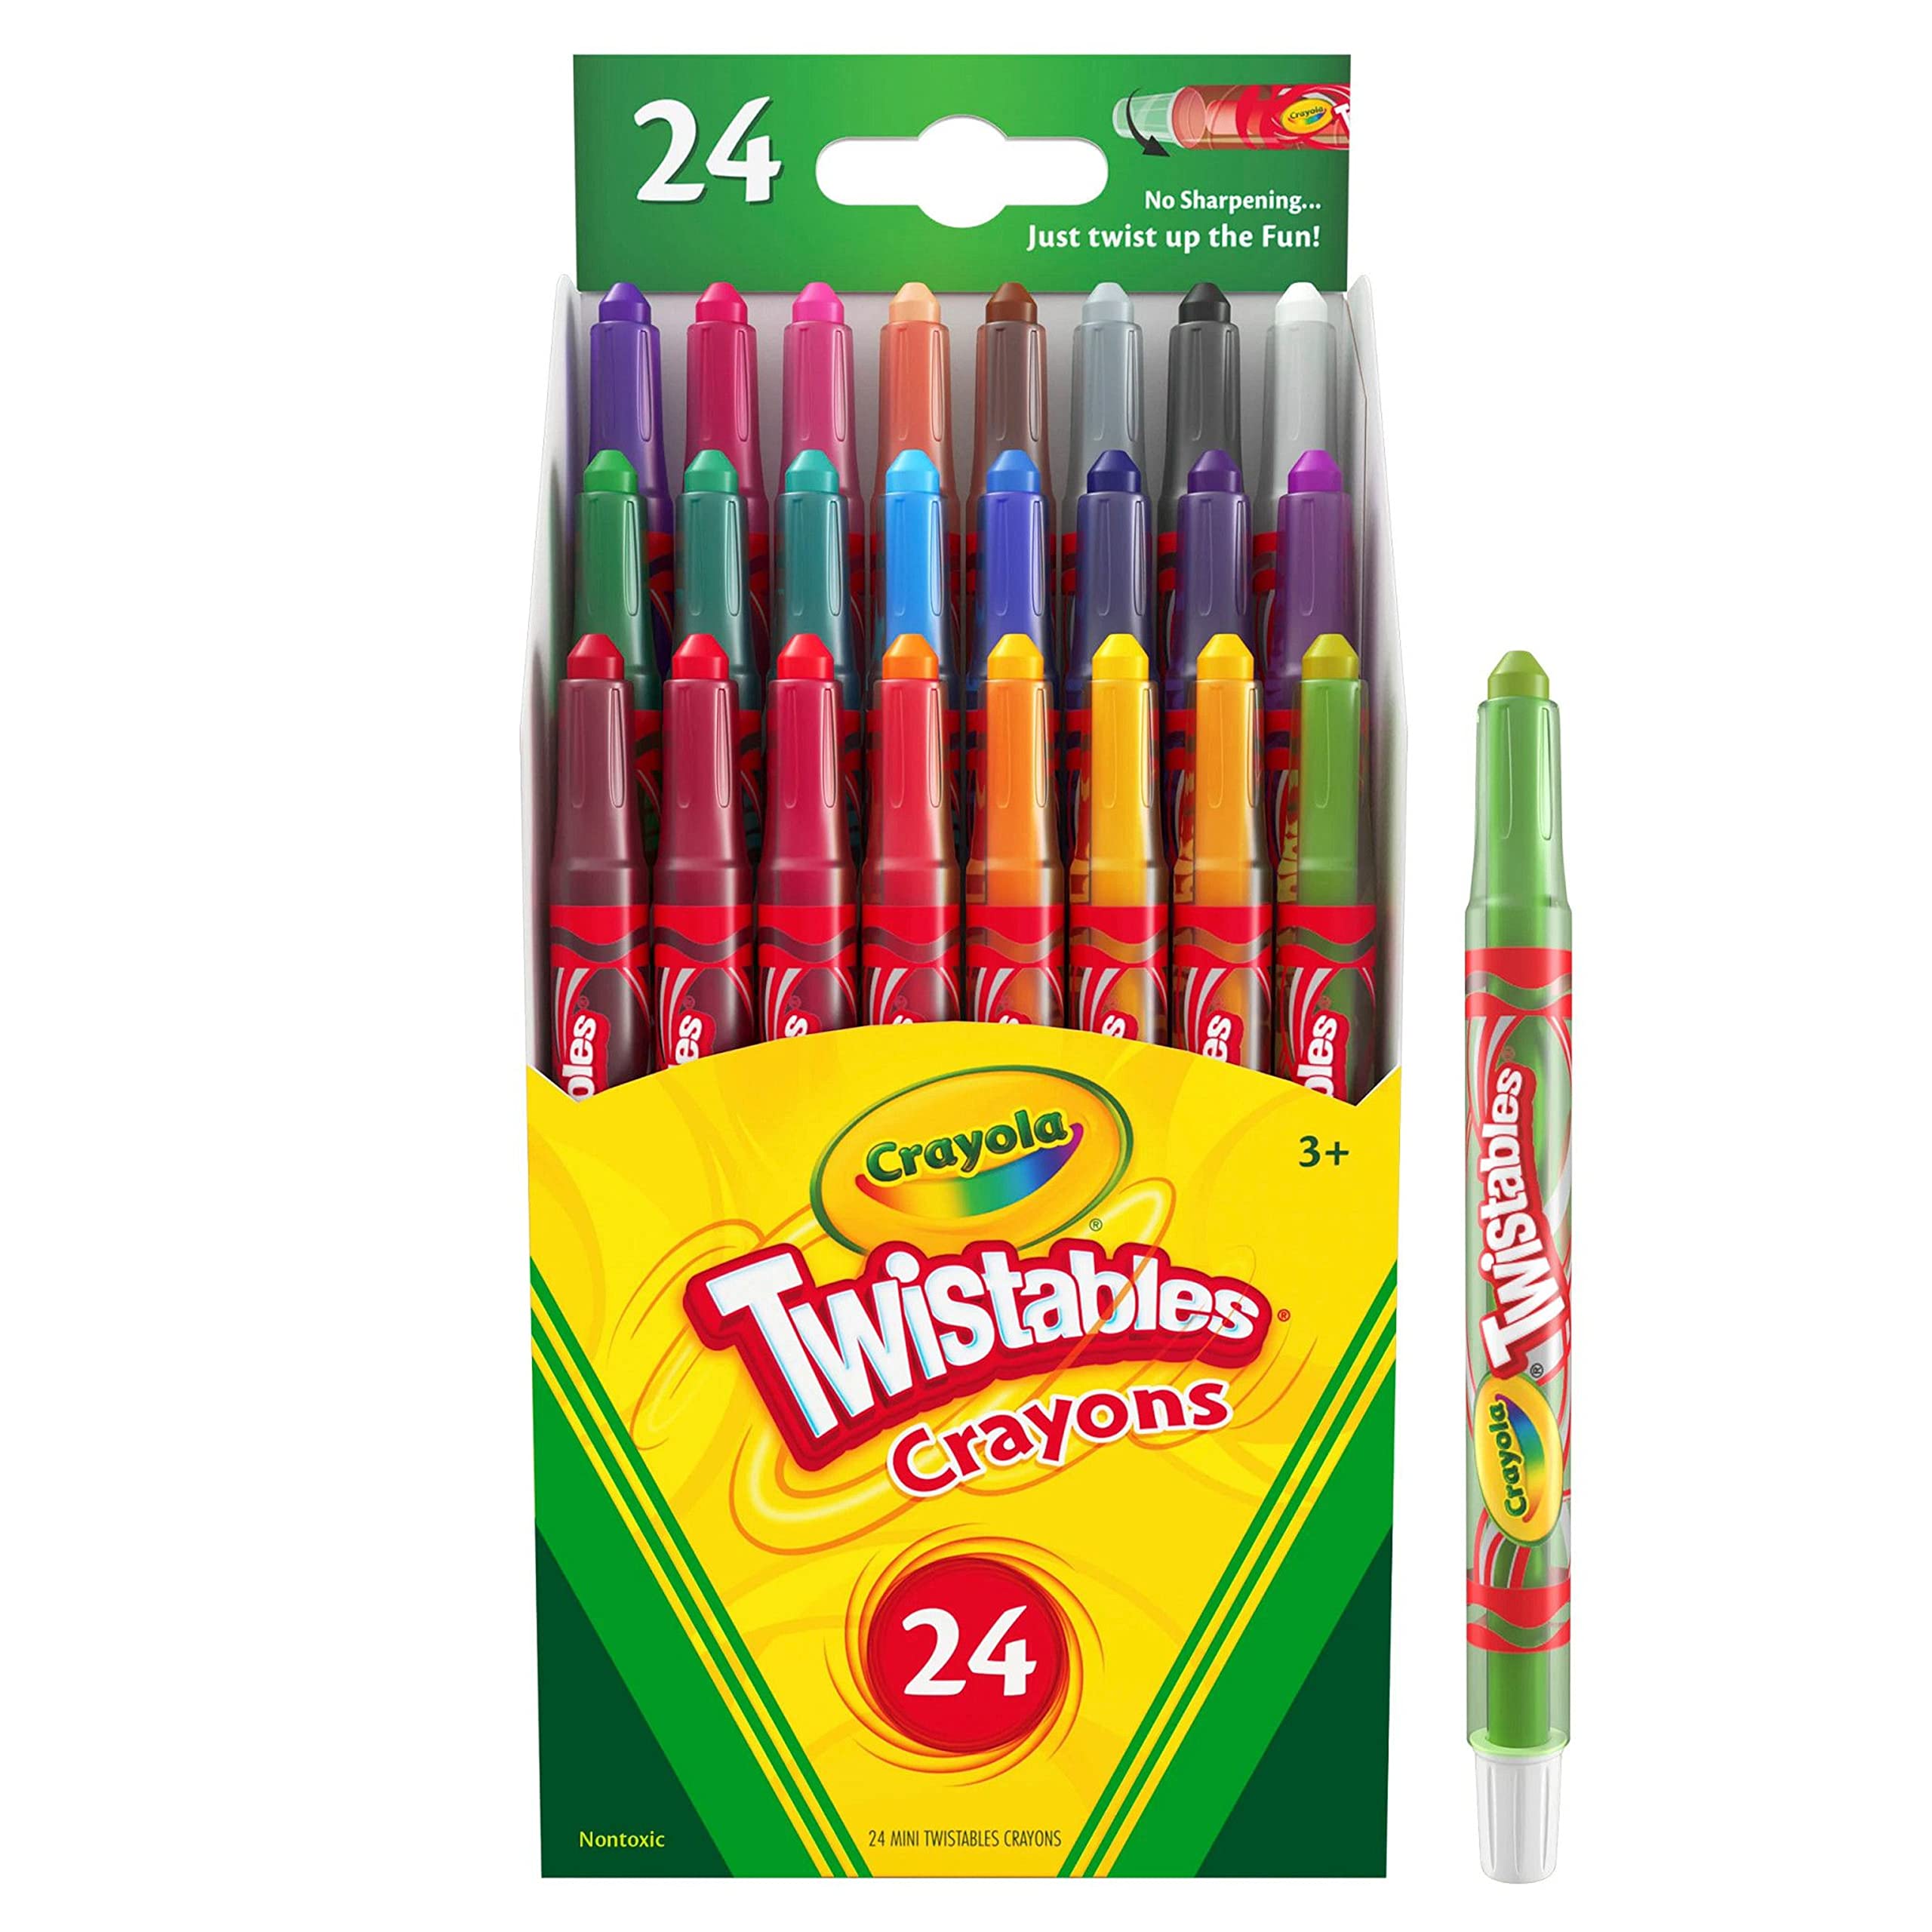 Crayola Twistables Crayons Coloring Set, Kids Indoor Activities at Home, 24 Count, Assorted